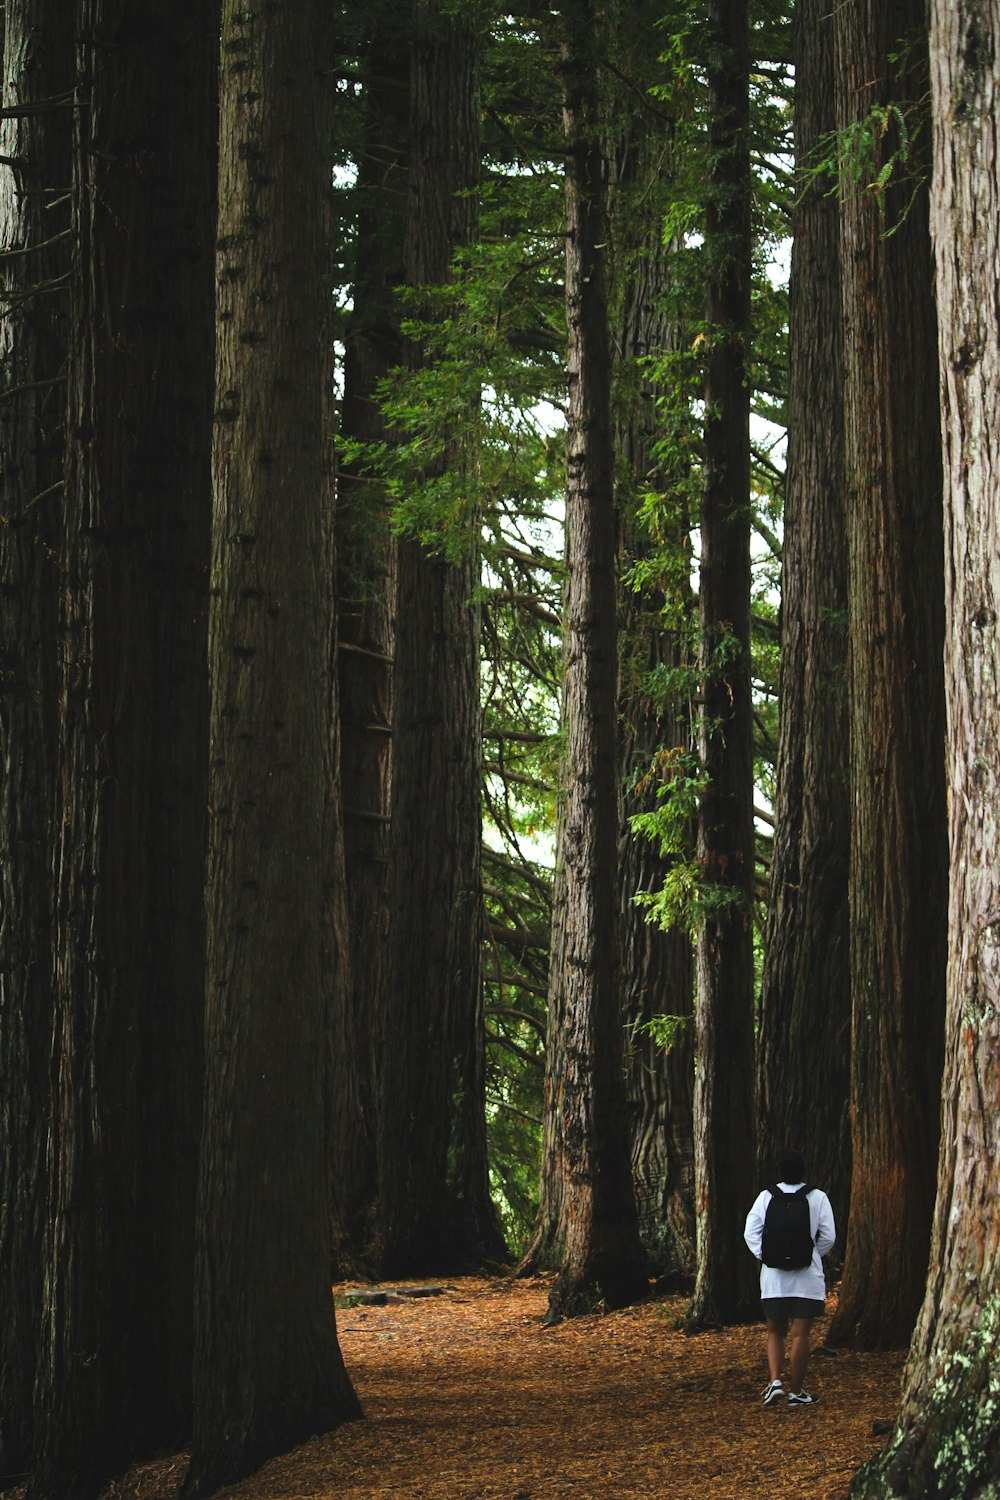 Una persona parada en medio de un bosque